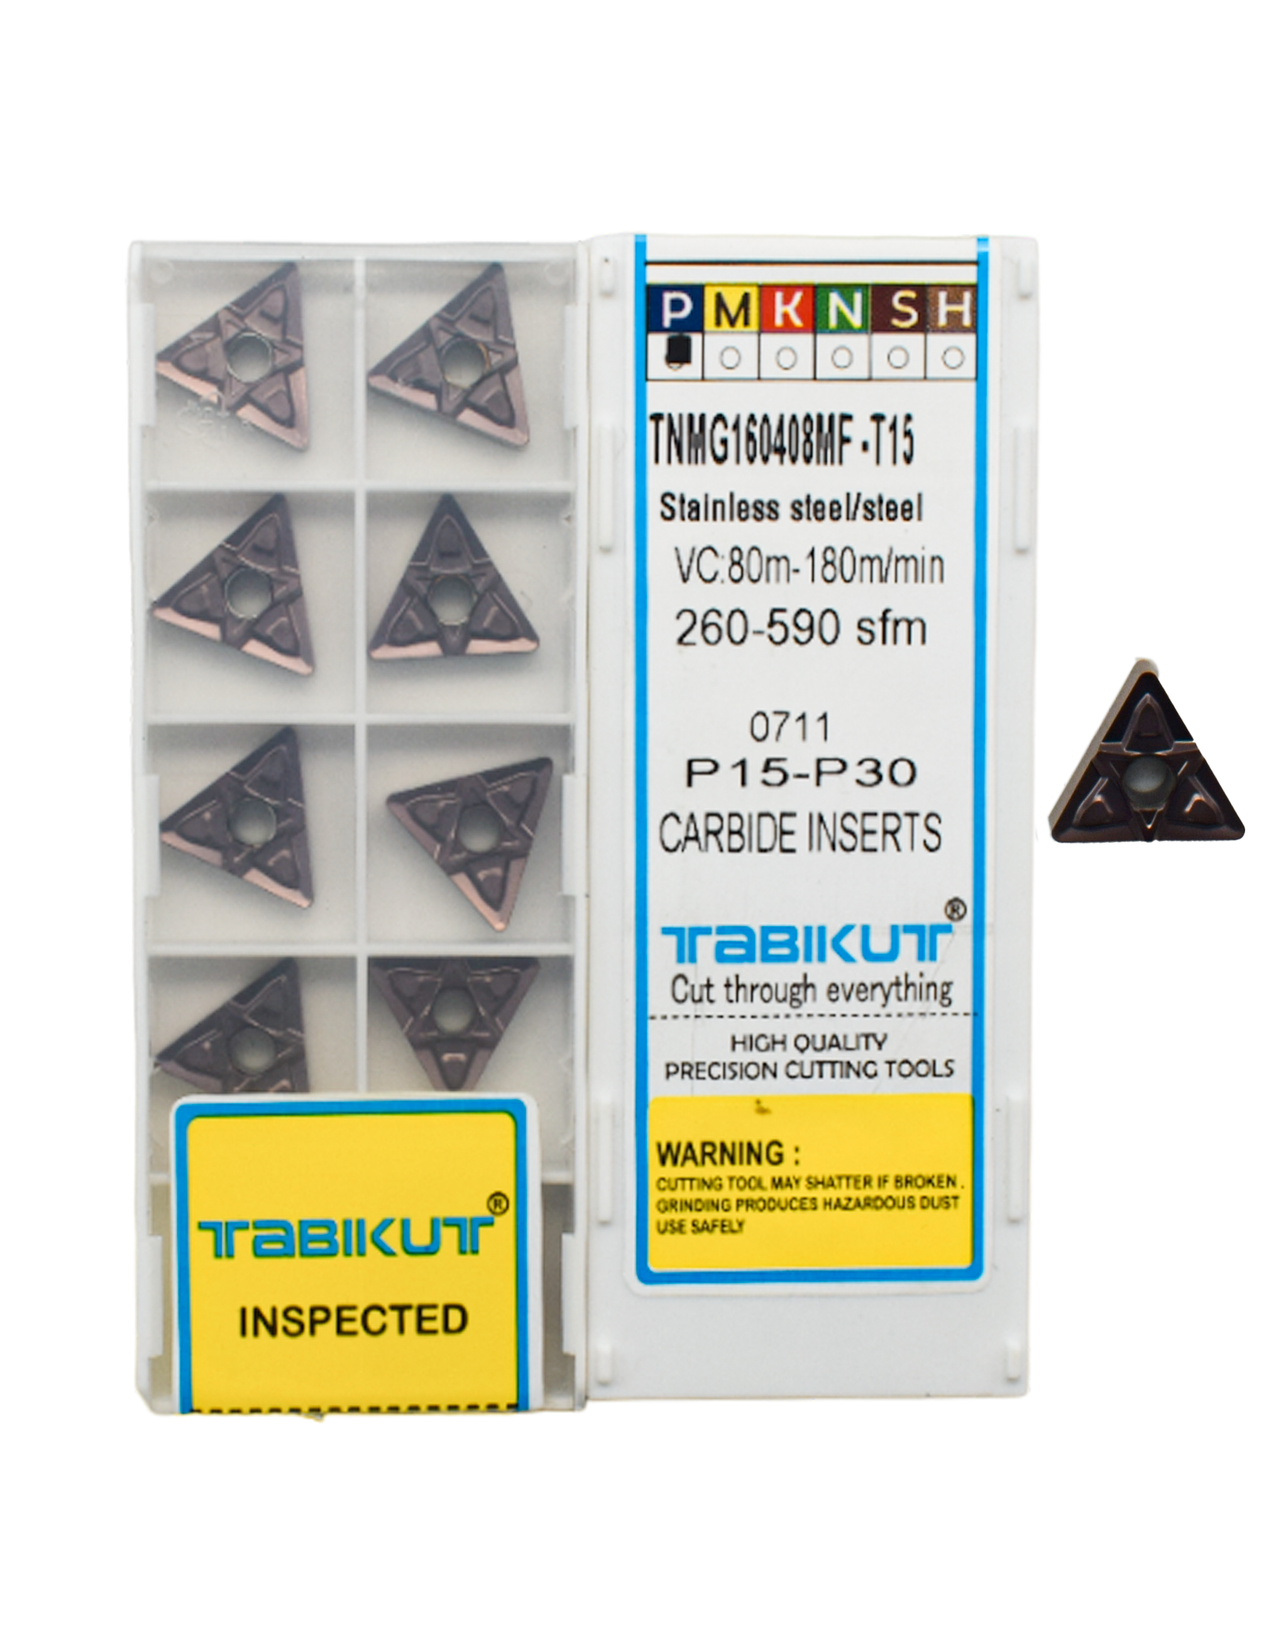 TNMG160408 MF T15 TABIKUT carbide insert for steel black pack of 10